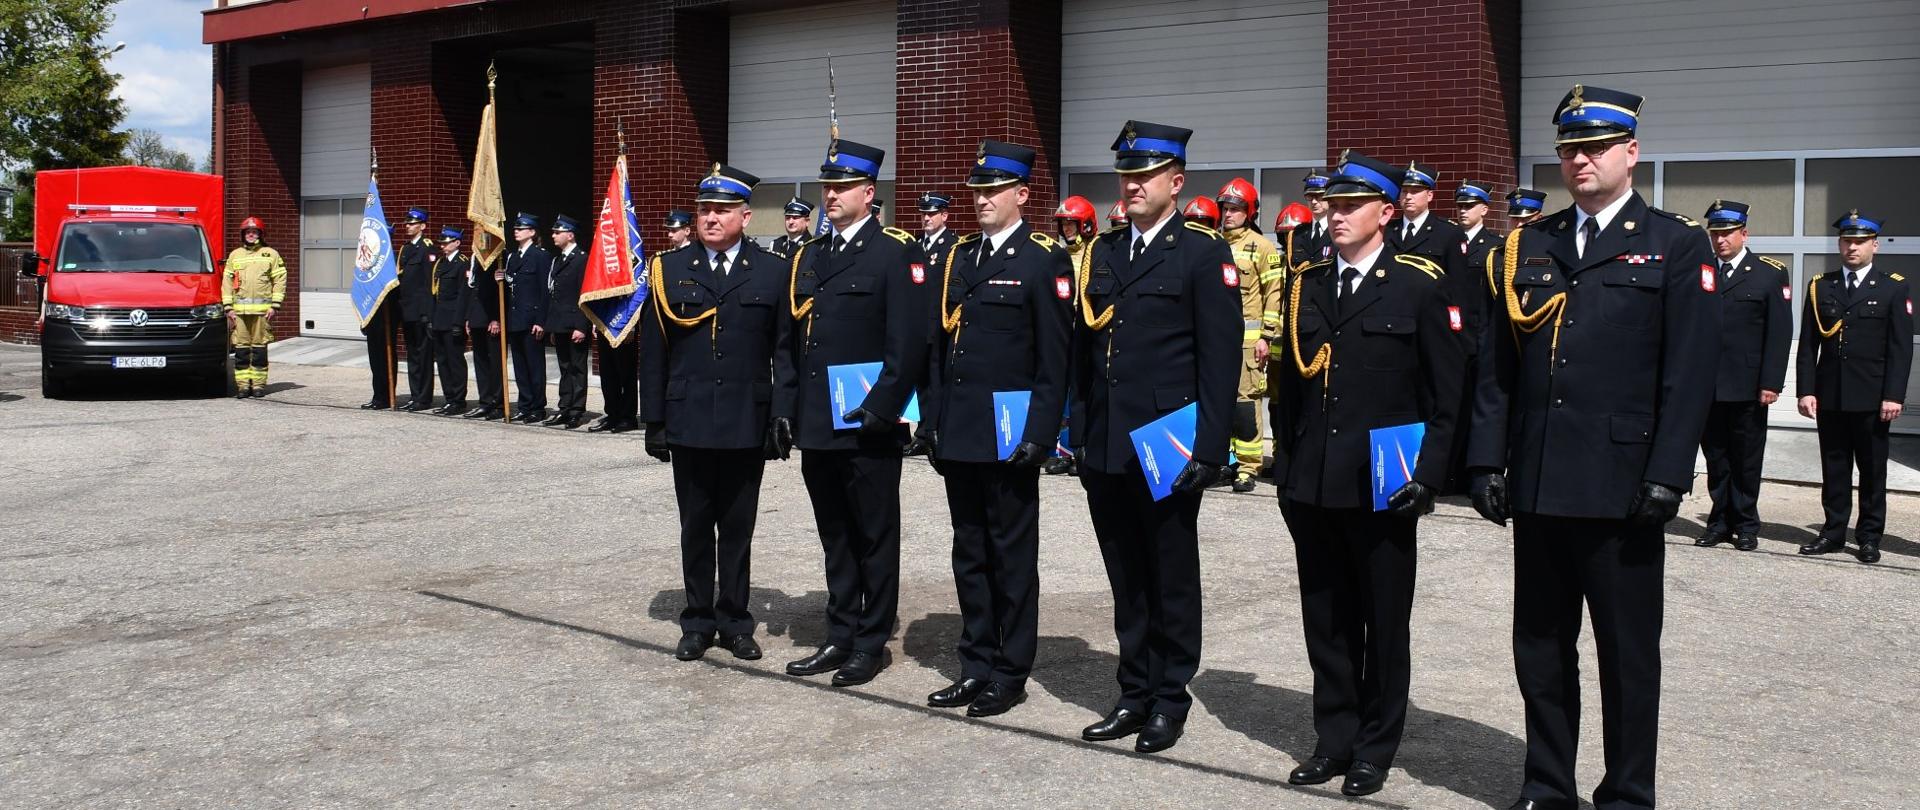 6 strażaków stoi w szeregu przed długim szeregiem innych strażaków, wszyscy w ceimnych mundurach i w rogatywkach, trzymają niebieskie teczki w ręku